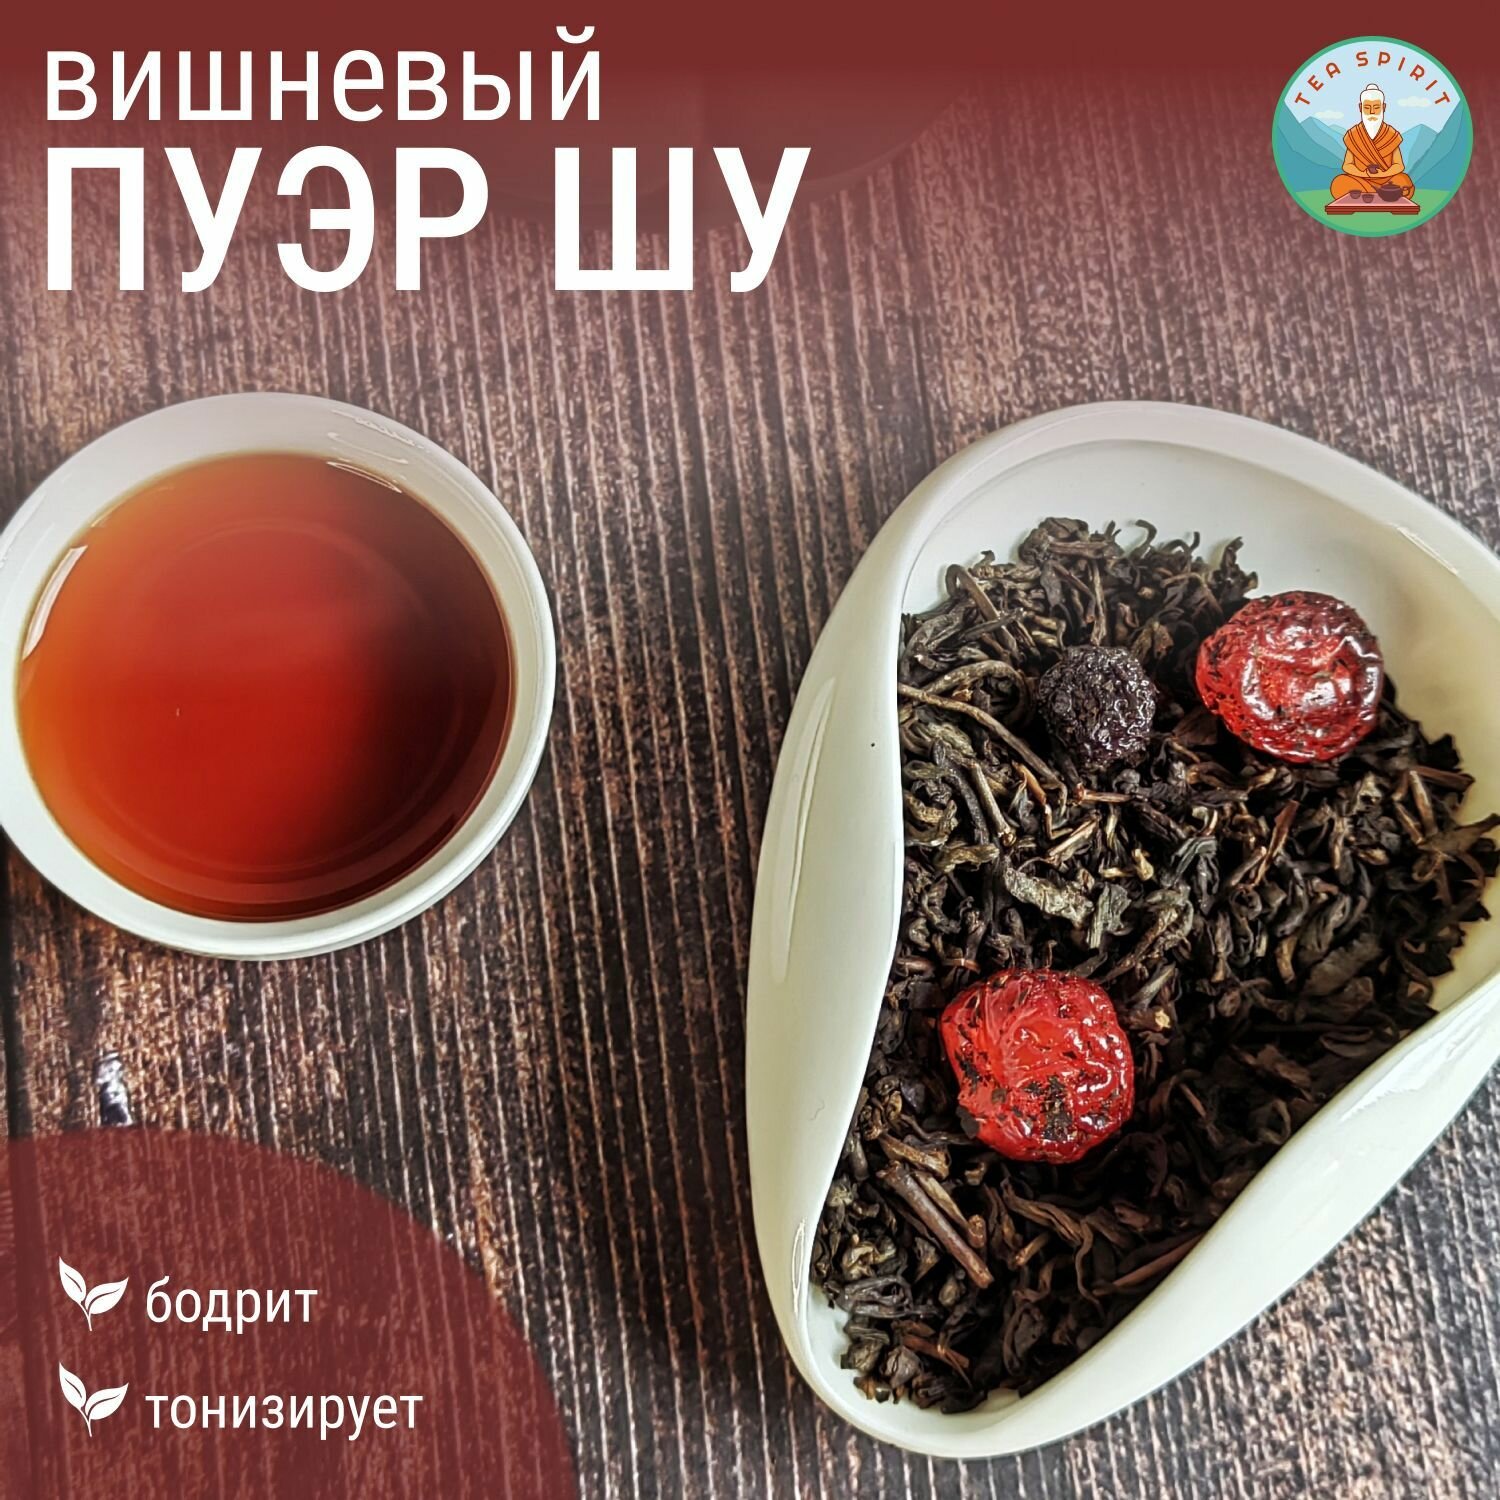 Чай черный пуэр ШУ вишневый / Китайский чай, чай листовой, чай с вишней, 100 г